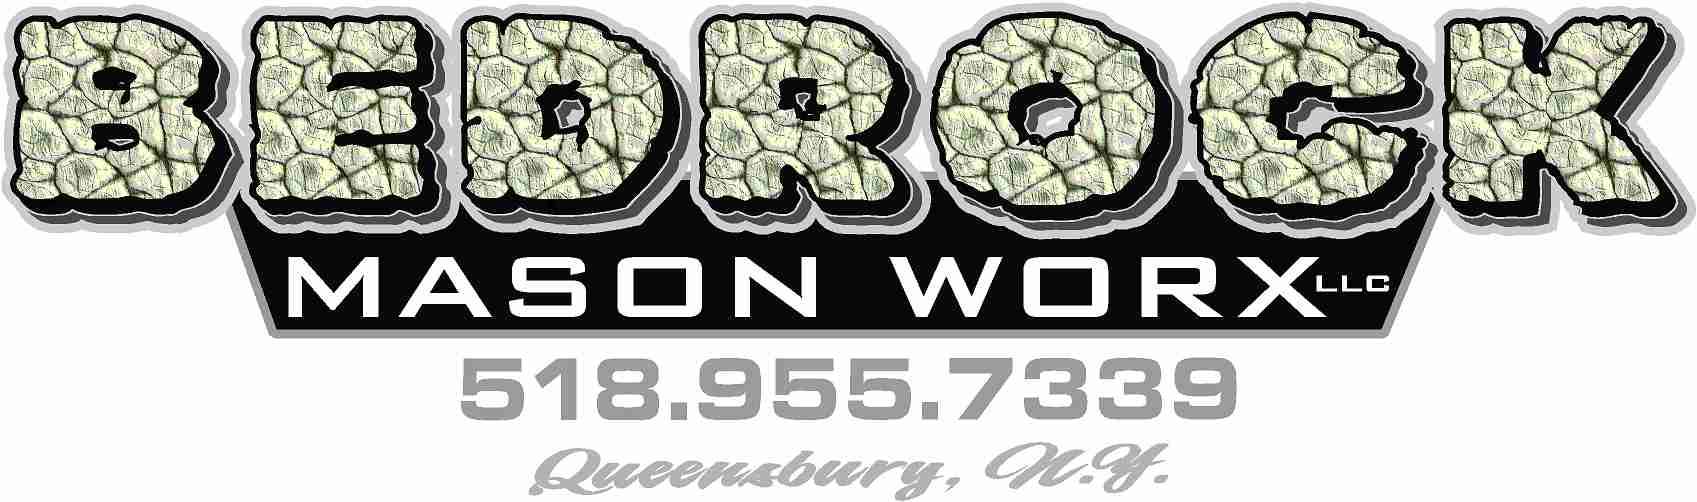 Bedrock Mason Worx LLC Logo